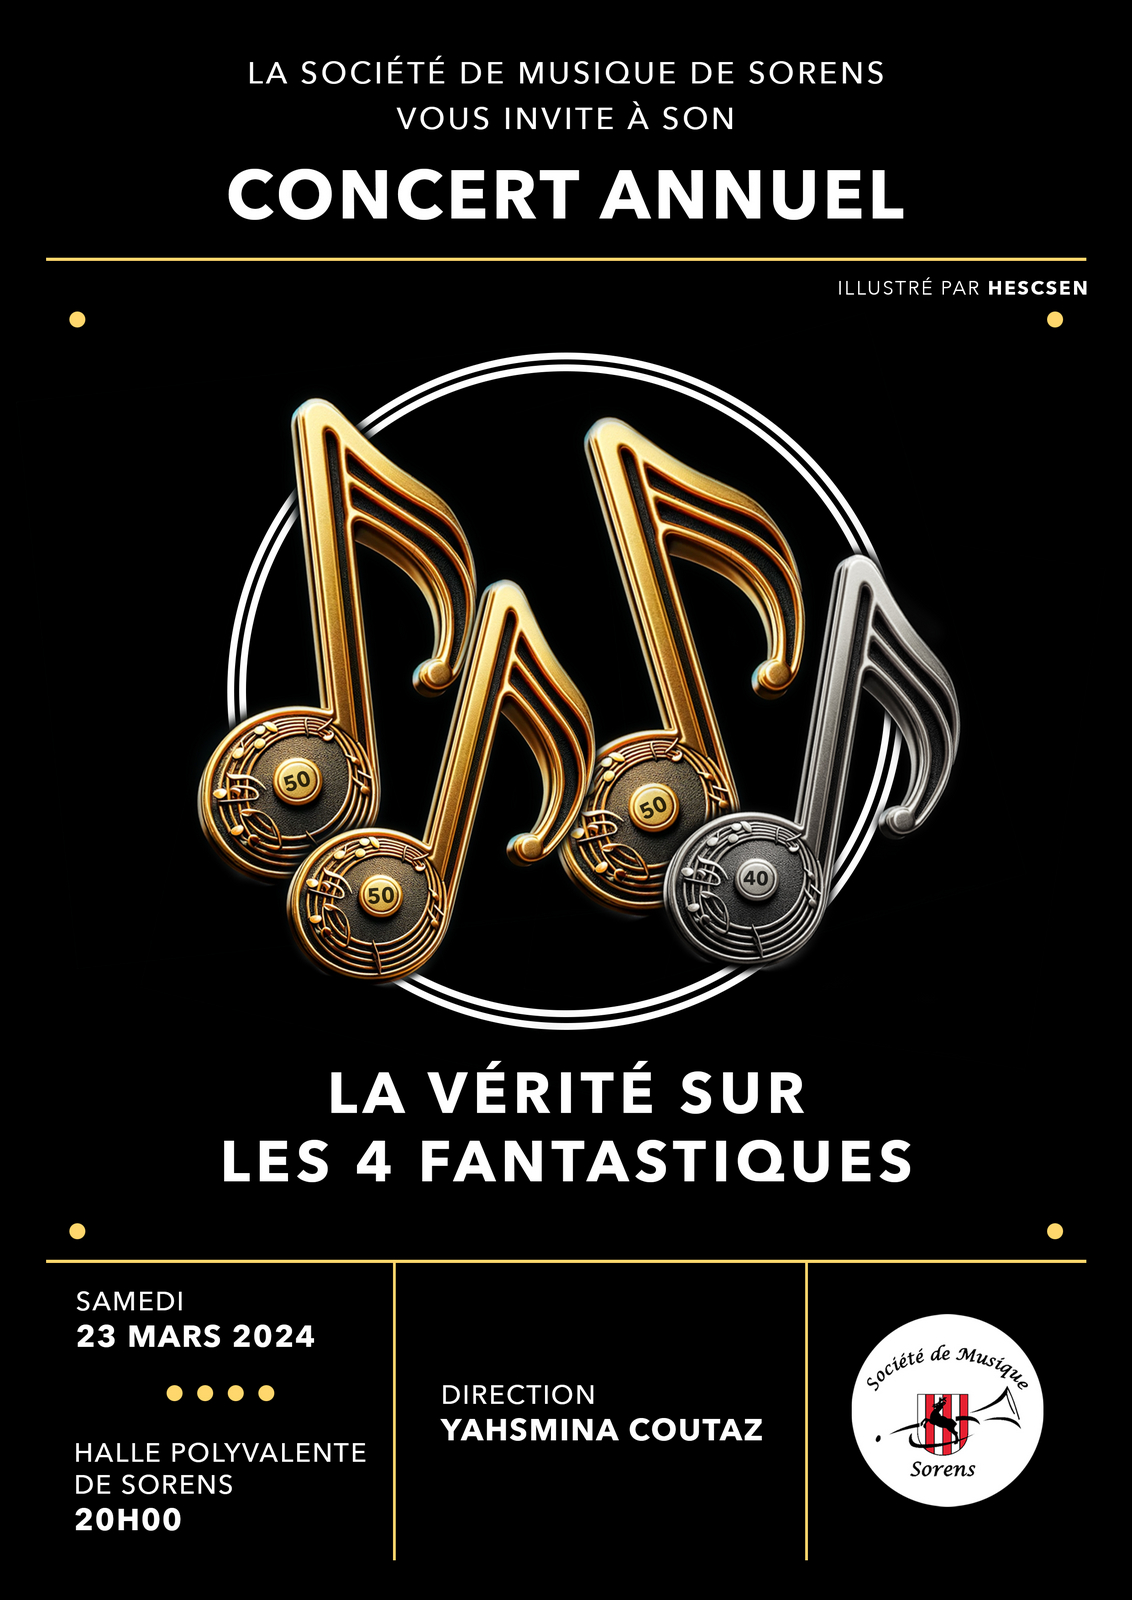 Image - Société de musique - Concert annuel